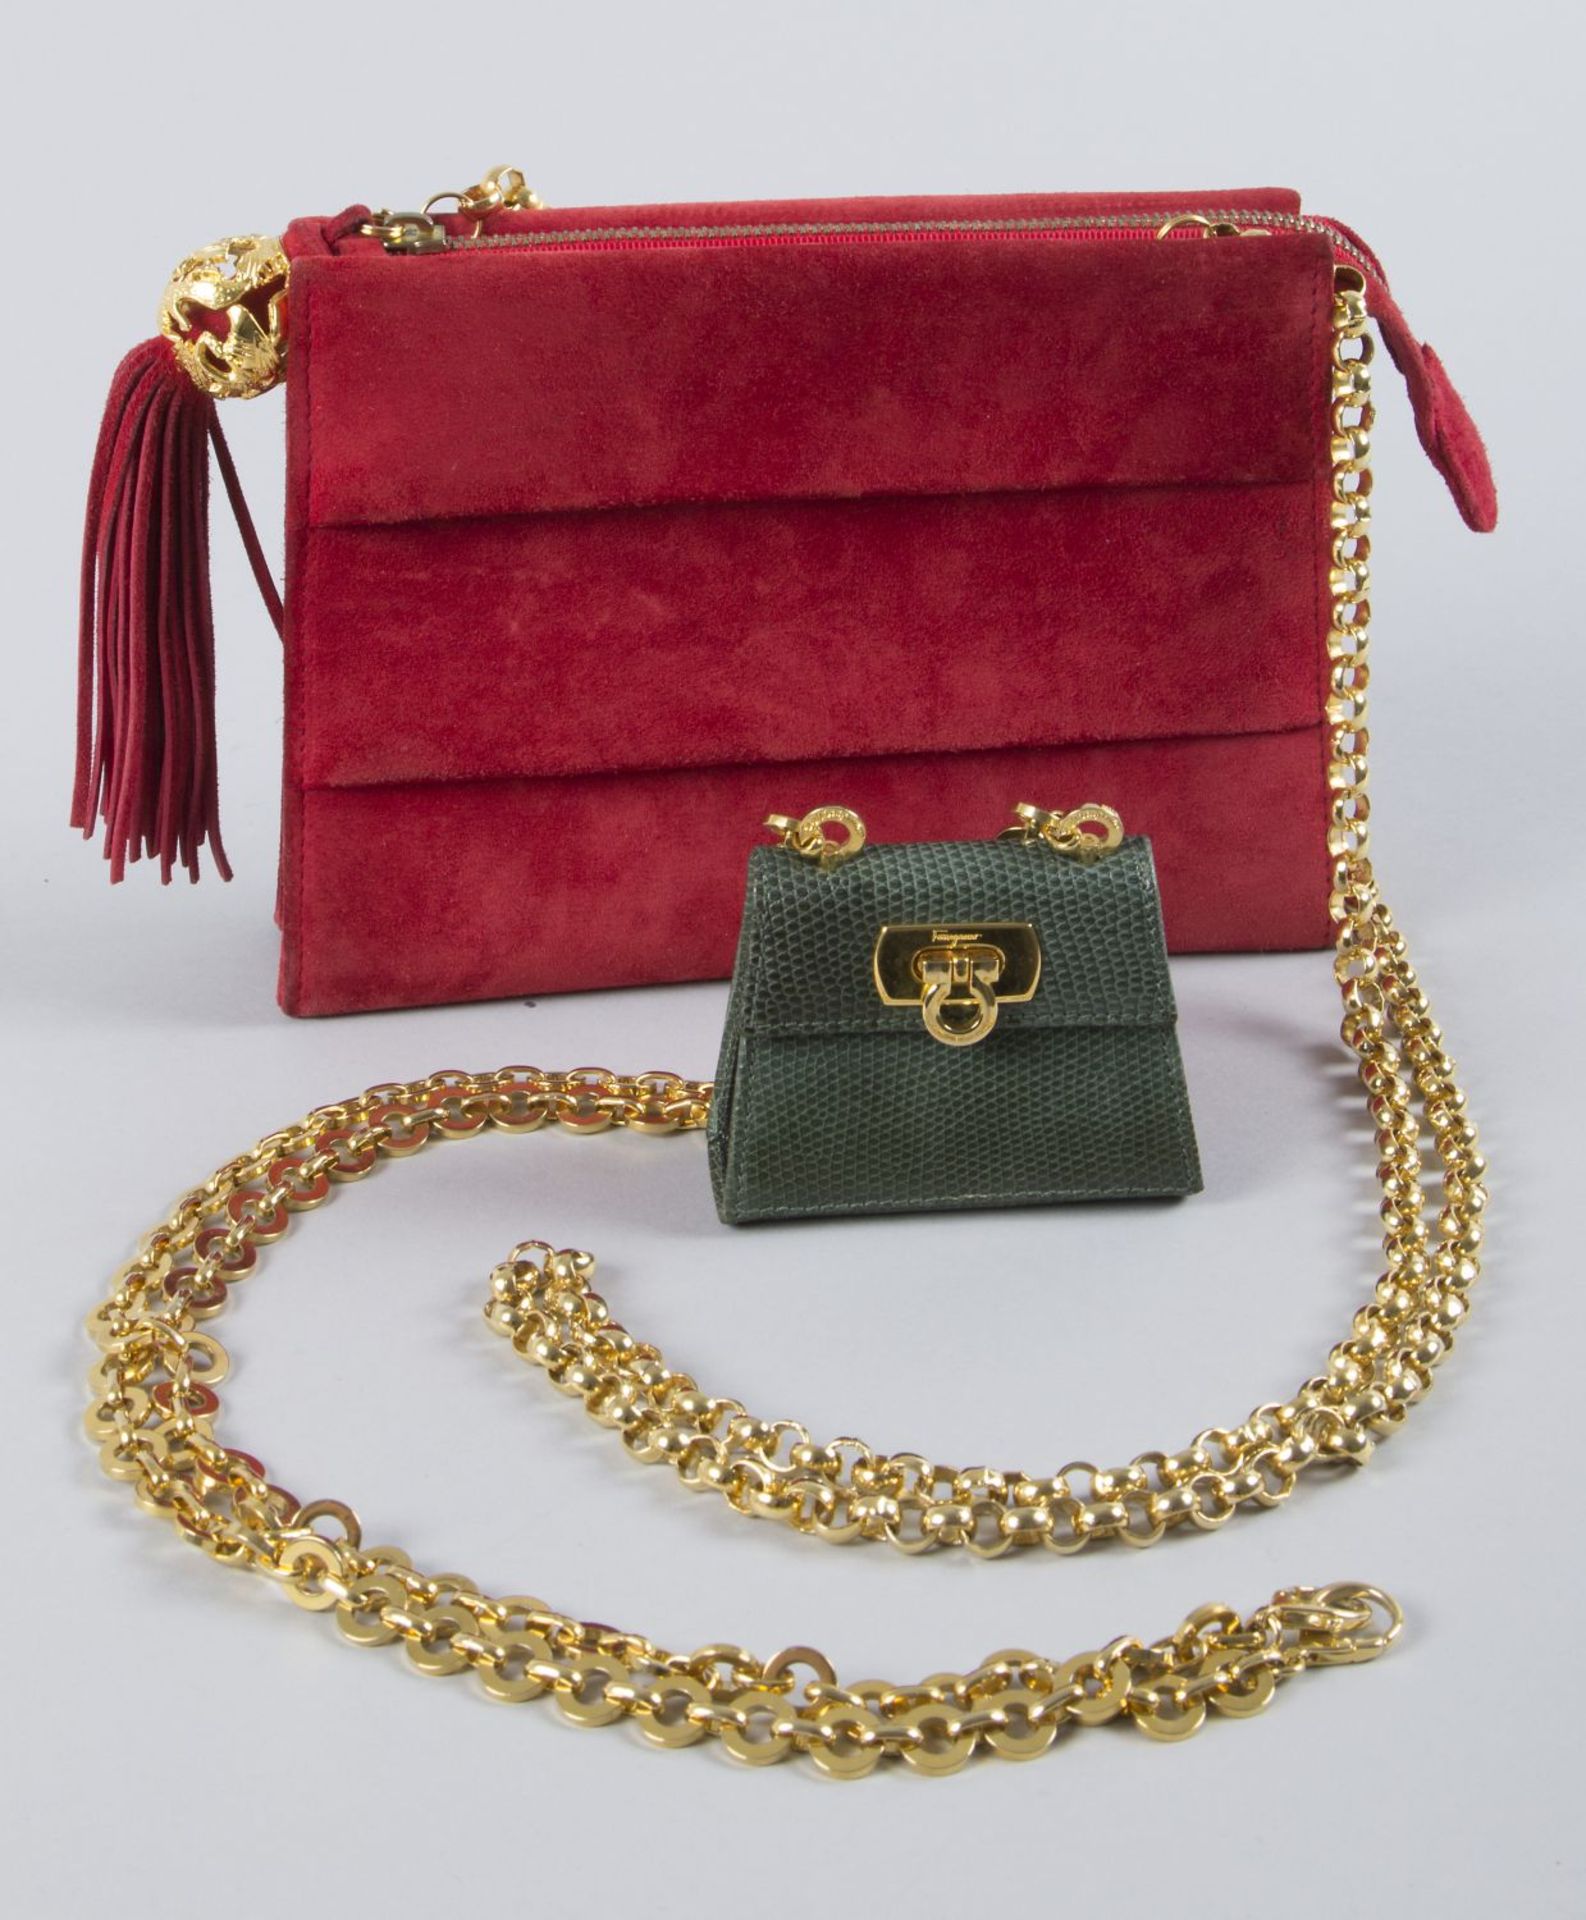 Salvatore Ferragamo-Abendtasche und -MiniaturtascheRotes Wildleder mit goldfarbenem Innenleben sowie